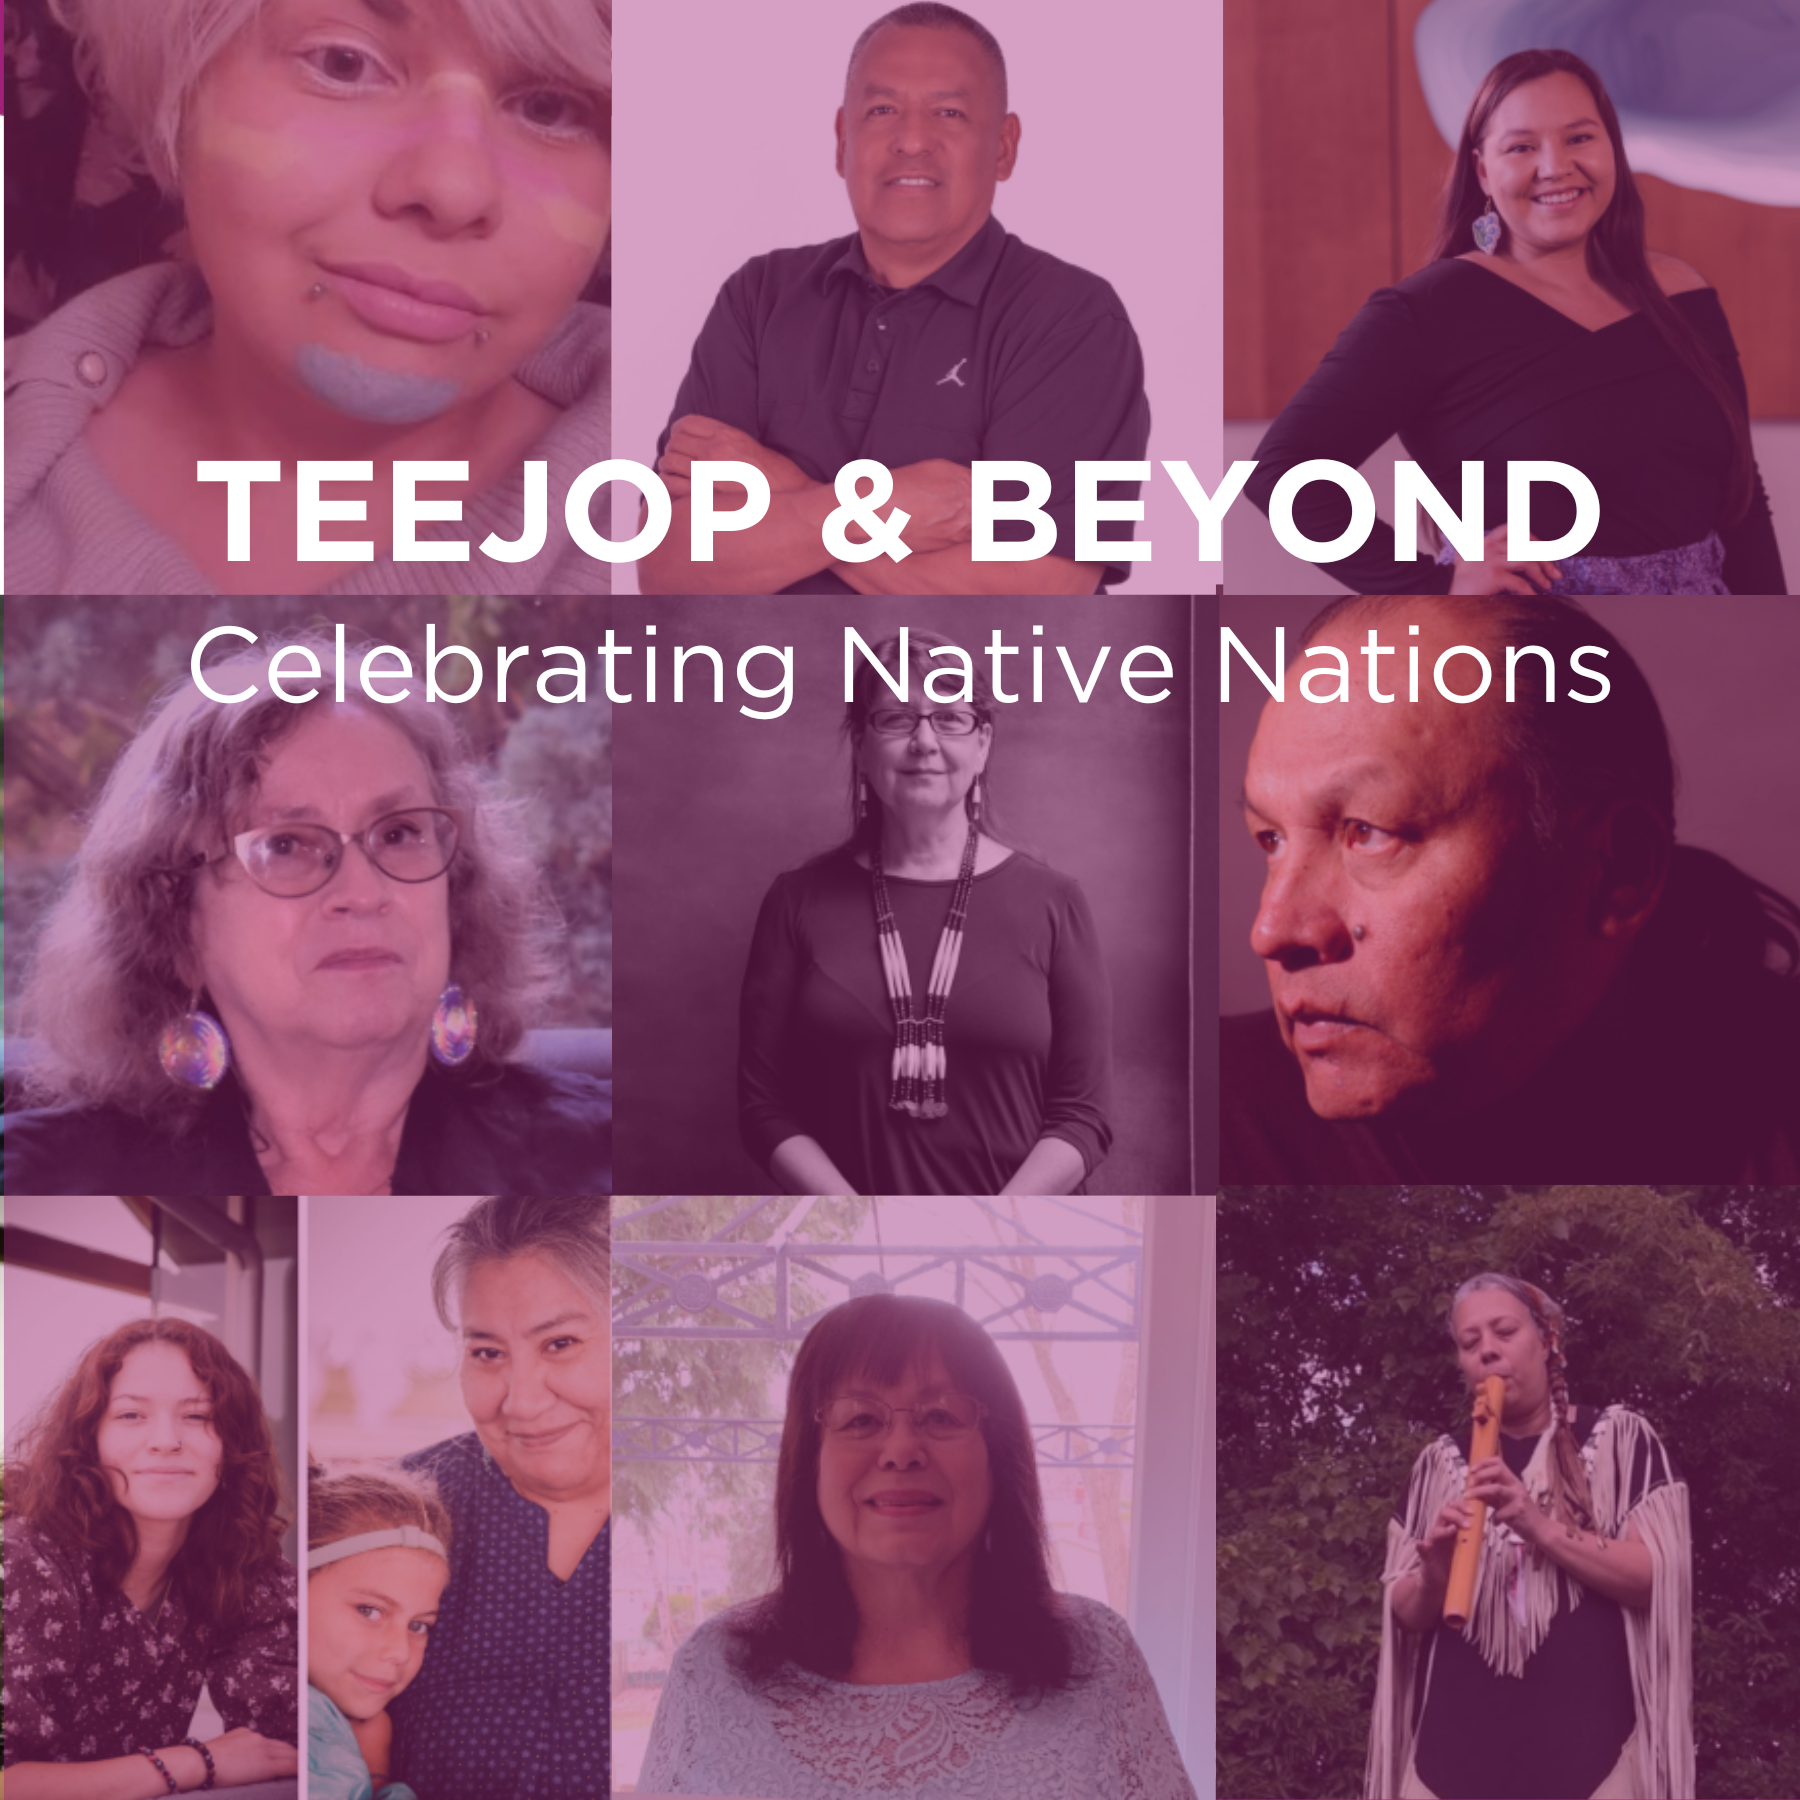 Madison indigenous community leaders shine in “Teejop & Beyond” presentation series